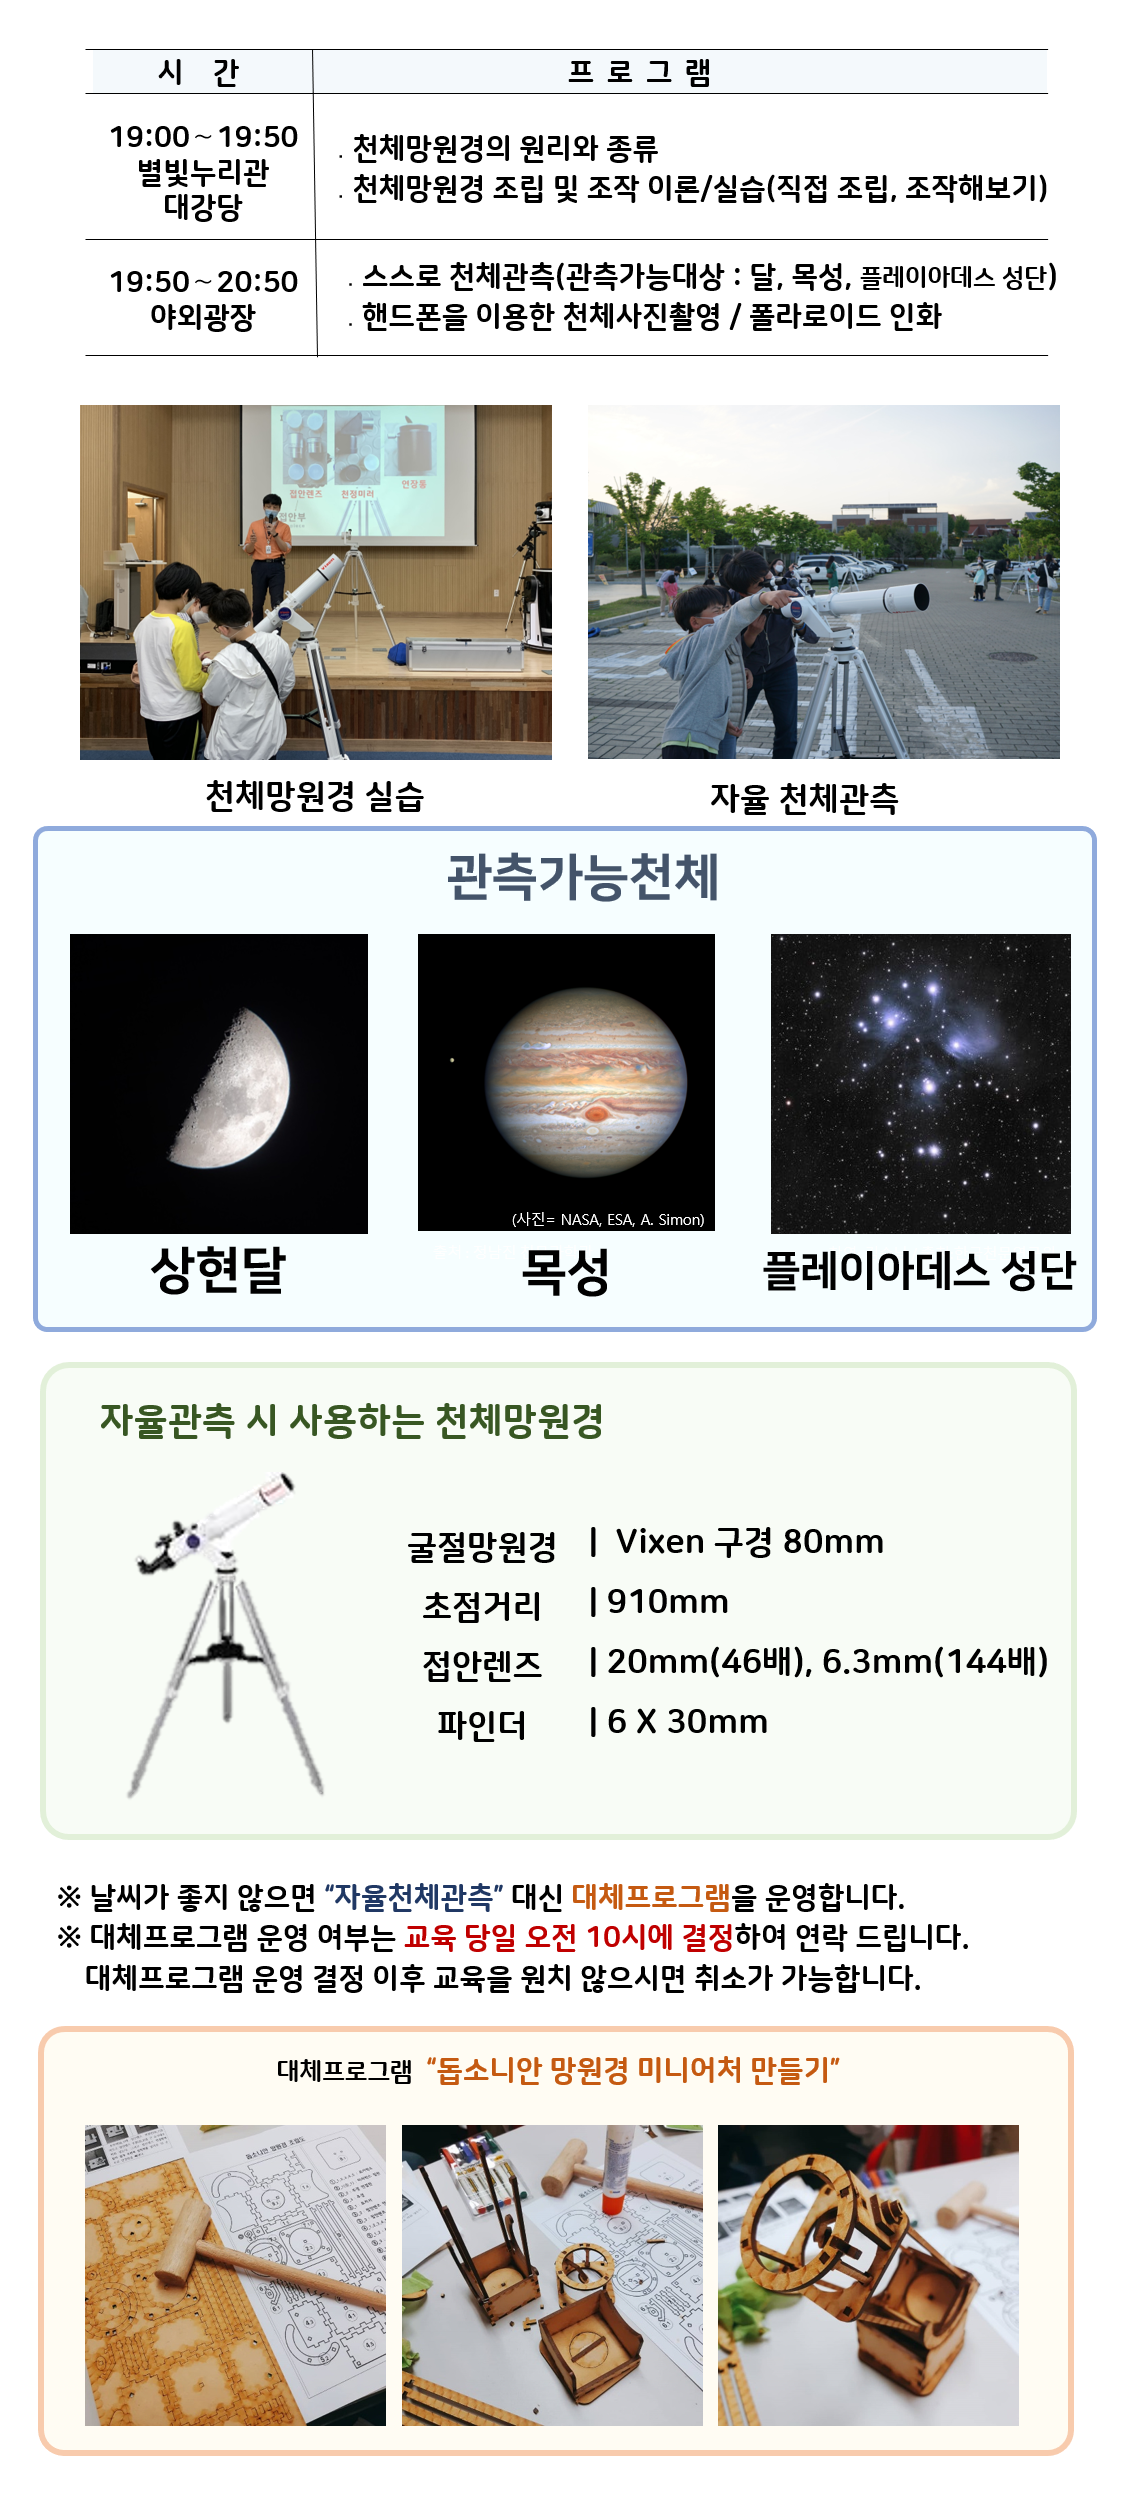 관측대장 시간 프로그램 19:00～19:50 별빛누리관 대강당 ․천체망원경의 원리와 종류 ․천체망원경 조립 및 조작 이론/실습(직접 조립, 조작해보기) |19:50～20:50 야외광장 ․스스로 천체관측(관측가능대상 : 달,  목성,  플레이아데스 성단) ․핸드폰을 이용한 천체사진촬영 / 폴라로이드 인화|  천체망원경 실습(천체망원경 실습하는 사진) |자율 천체관측(관람객이 자율적으로 천체관측하는 모습)|관찰가능한 천체 상현달(상현달 사진), 목성(목성 사진), 플레이아데스 성단(플레이아데스 성단 사진) |자율관측 시 사용하는 천체 망원경(천체망원경 사진),  굴절망원경 Vixen 구경 80mm 초점거리 910mm 접안렌즈 20mm(46배), 6.3mm(144배) 파인더 6 X 30mm| ※ 날씨가 좋지 않으면 “자율천체관측” 대신 대체프로그램을 운영합니다.  ※ 대체프로그램 운영 여부는 교육 당일 오전 10시에 결정하여 연락 드립니다. 대체프로그램 운영 결정 이후 교육을 원치 않으시면 취소가 가능합니다.| 대체프로그램 '돕소니안 망원경 미니어처 만들기(돕소니안 망원경 미니어처 만들기 재료사진, 돕소니안 망원경 미니어처 만들기 제작과정 사진, 돕소니안 망원경 미니어처 만들기 완성품 사진)' 